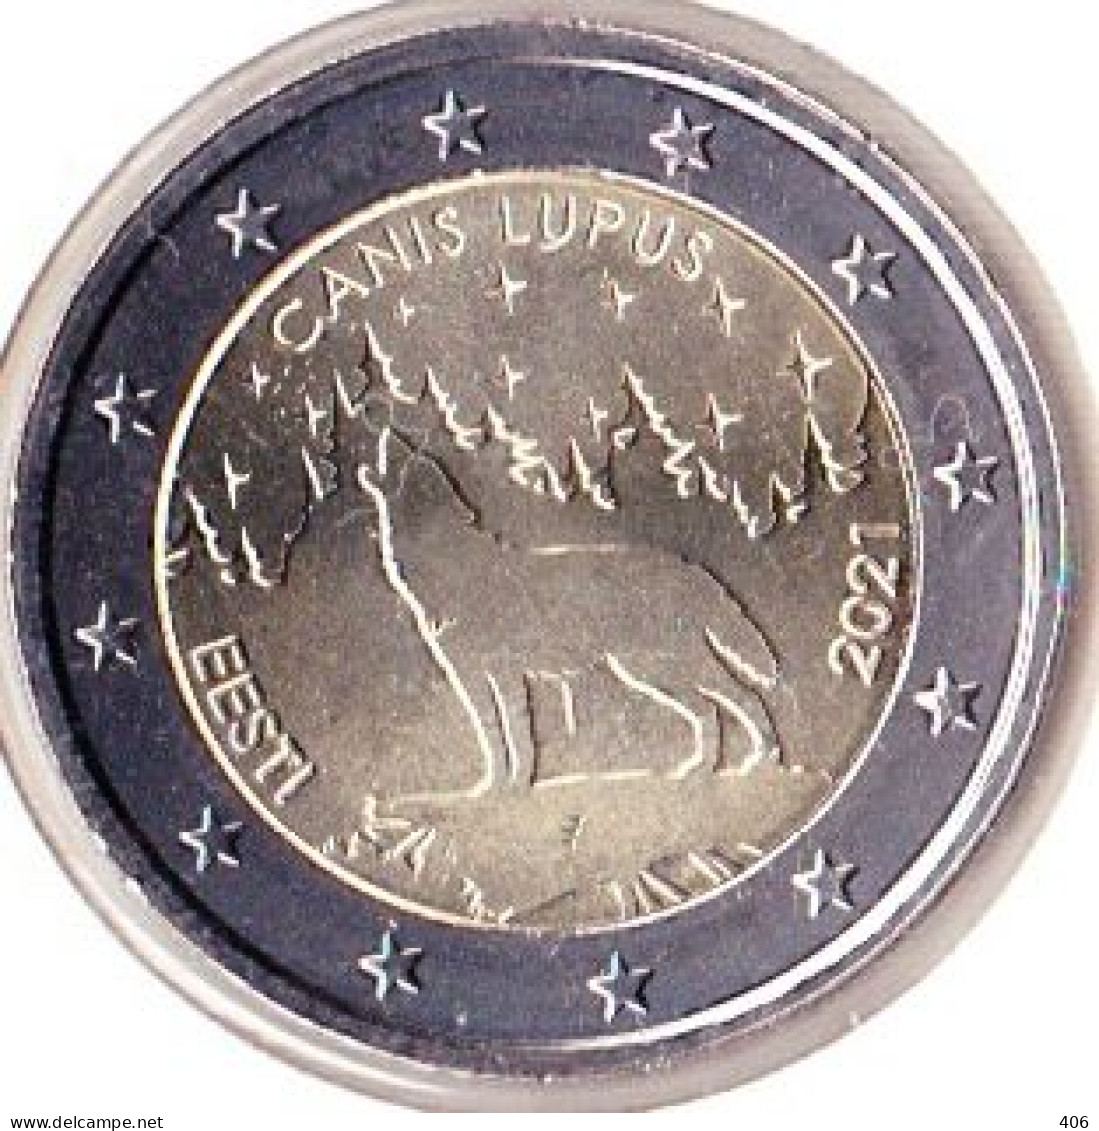 2 Euros Commémoratif Estonie 2021 - Estonie